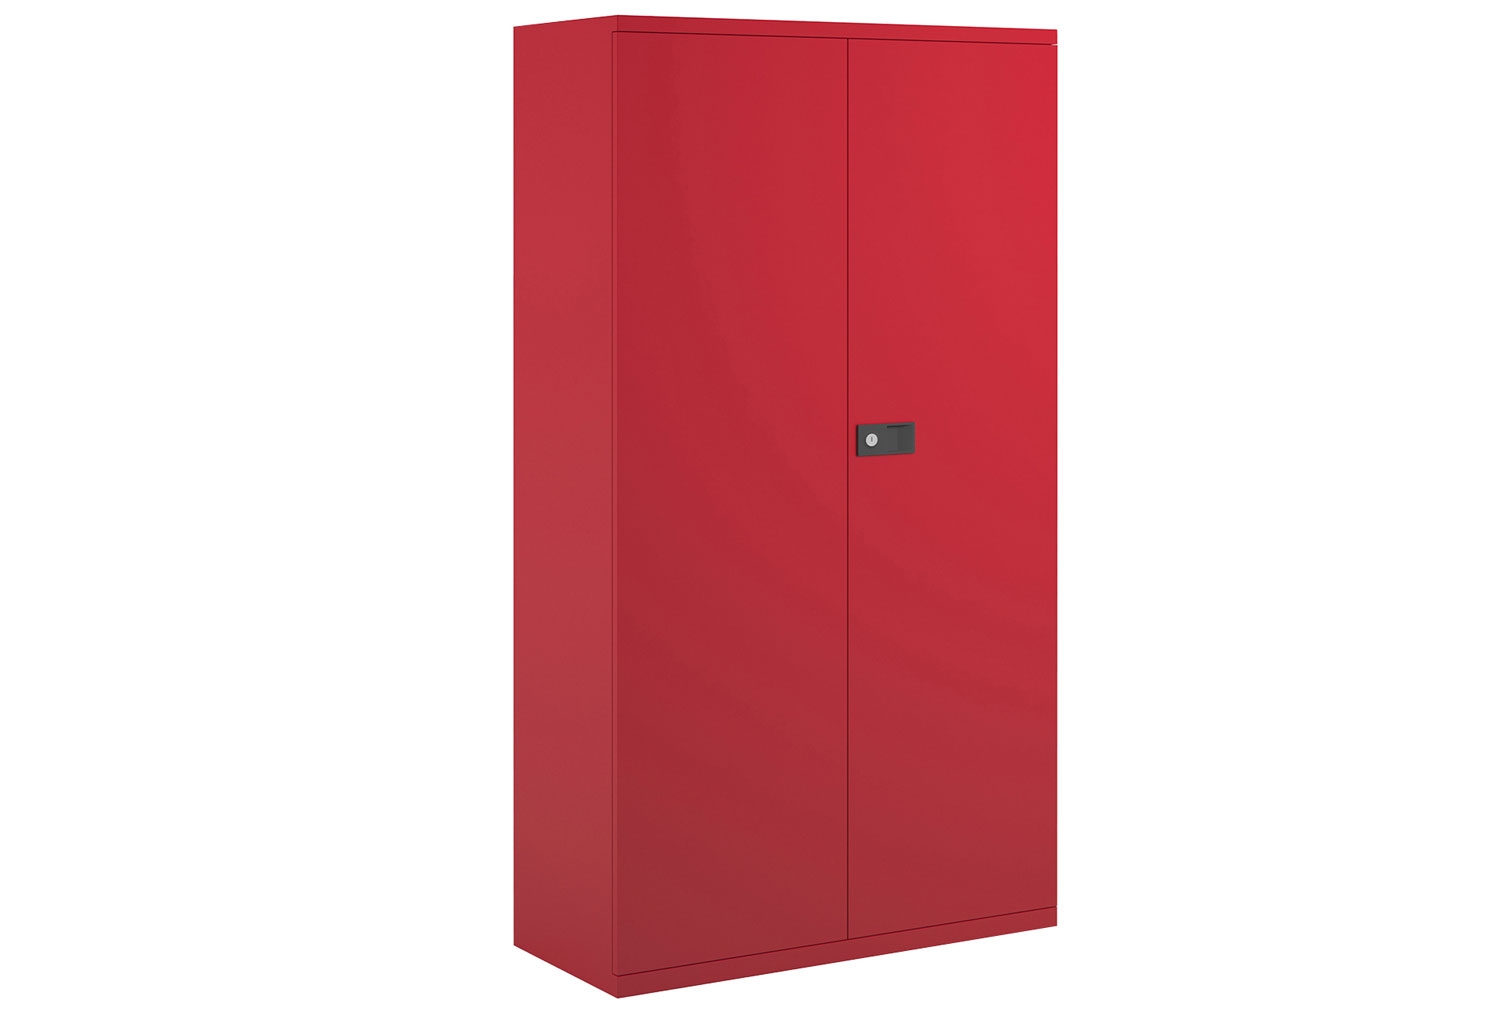 Bisley Economy Double Door Steel Office Cupboards, 3 Shelf - 91wx40dx181h (cm), Red